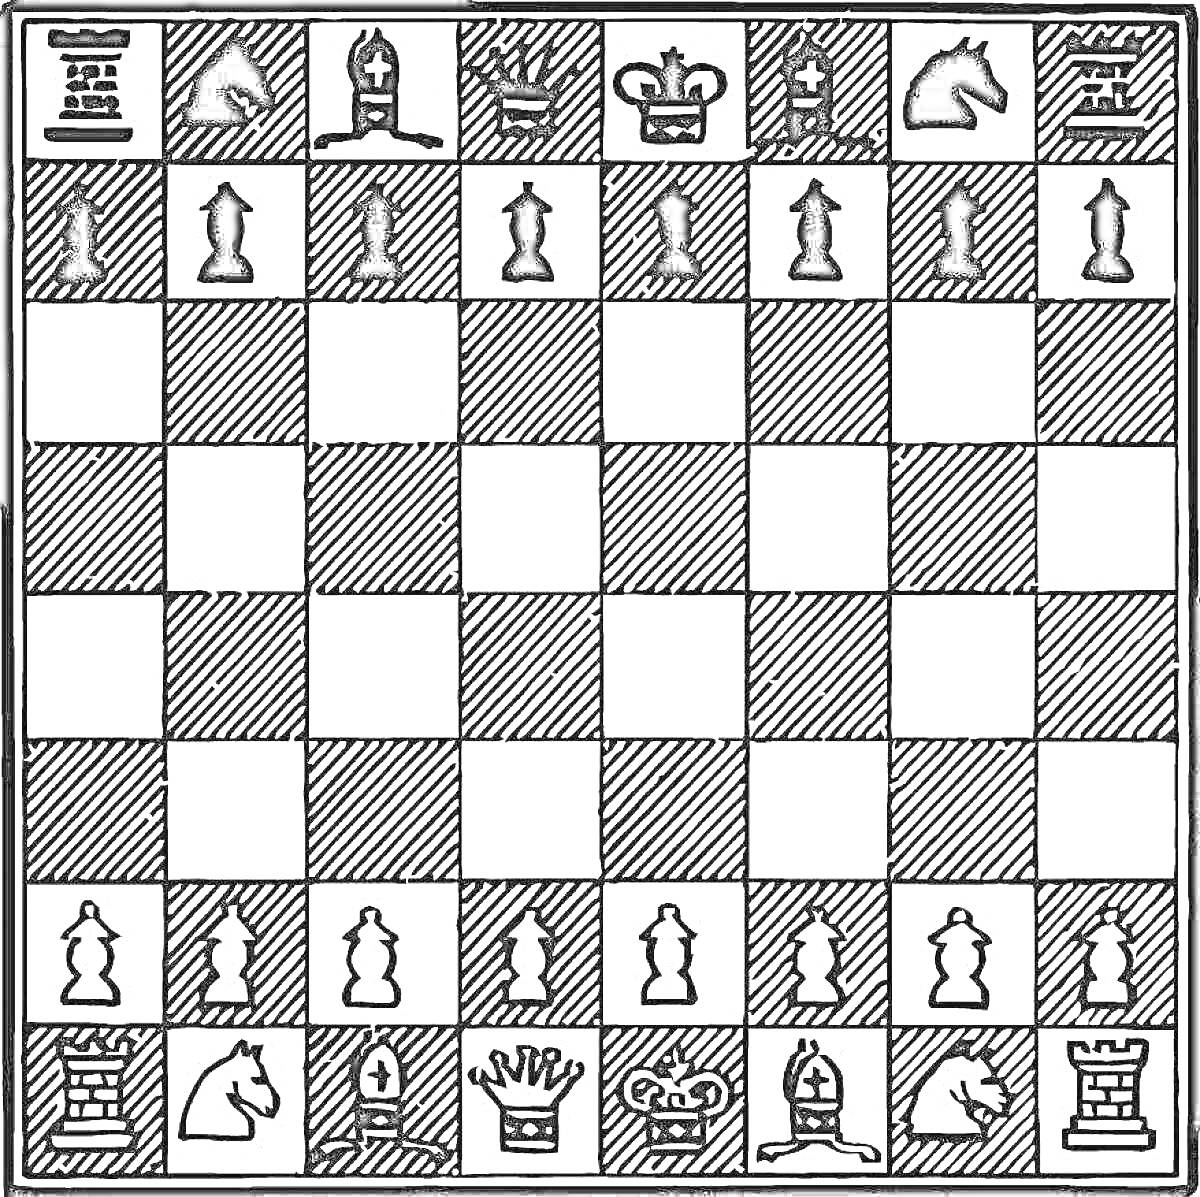 Шахматная доска с начальной расстановкой фигур